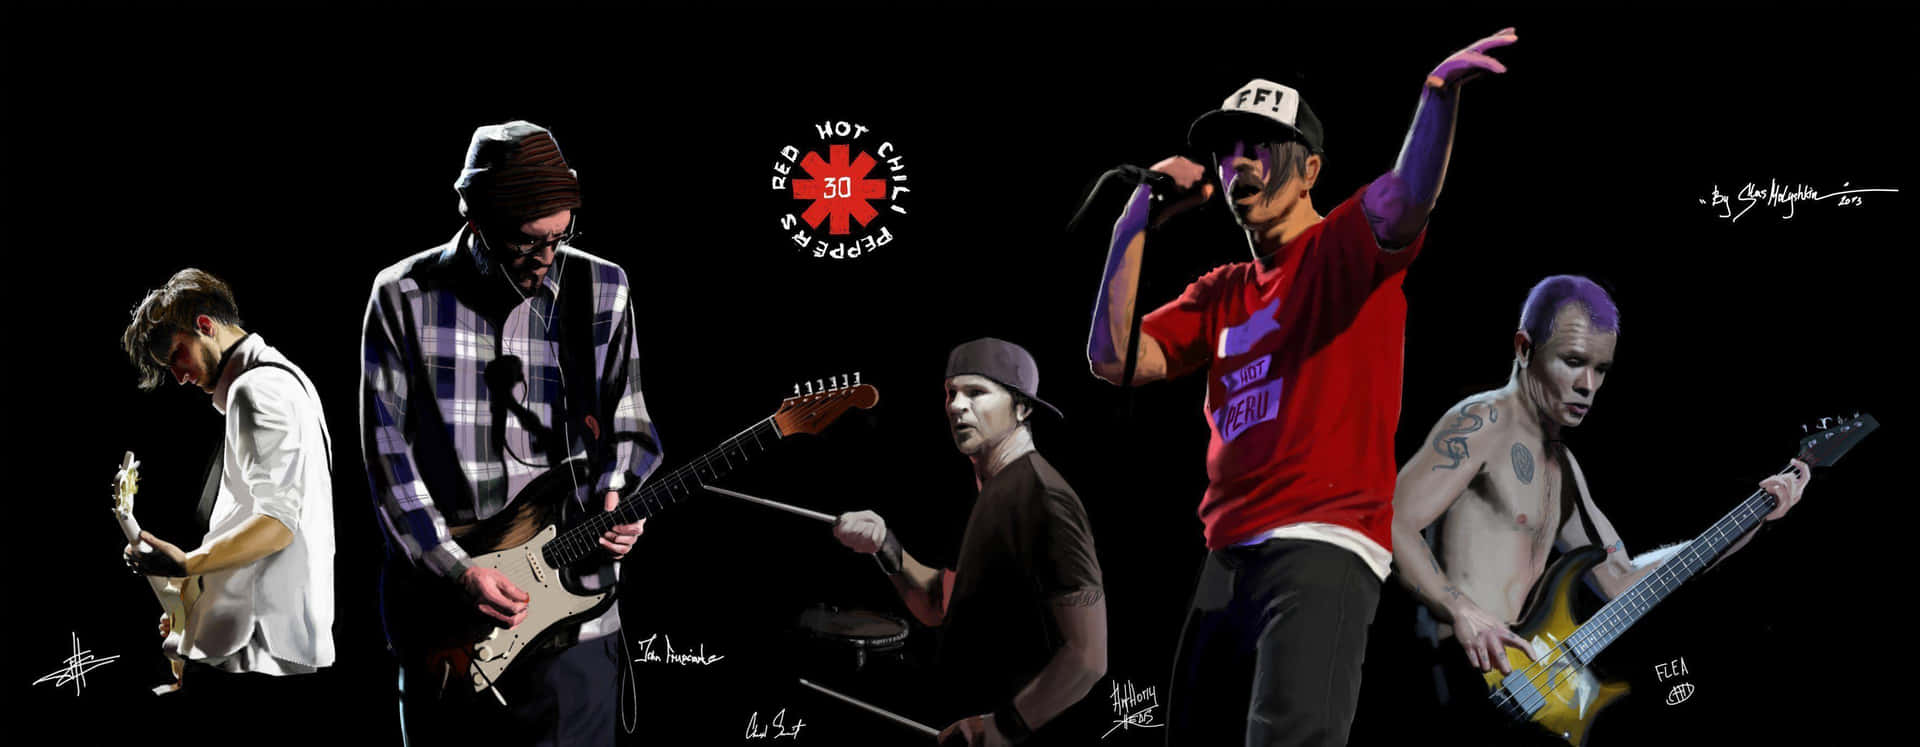 Redhot Chili Peppers Går Upp På Scenen För Att Rocka Sina Beundrande Fans. Wallpaper